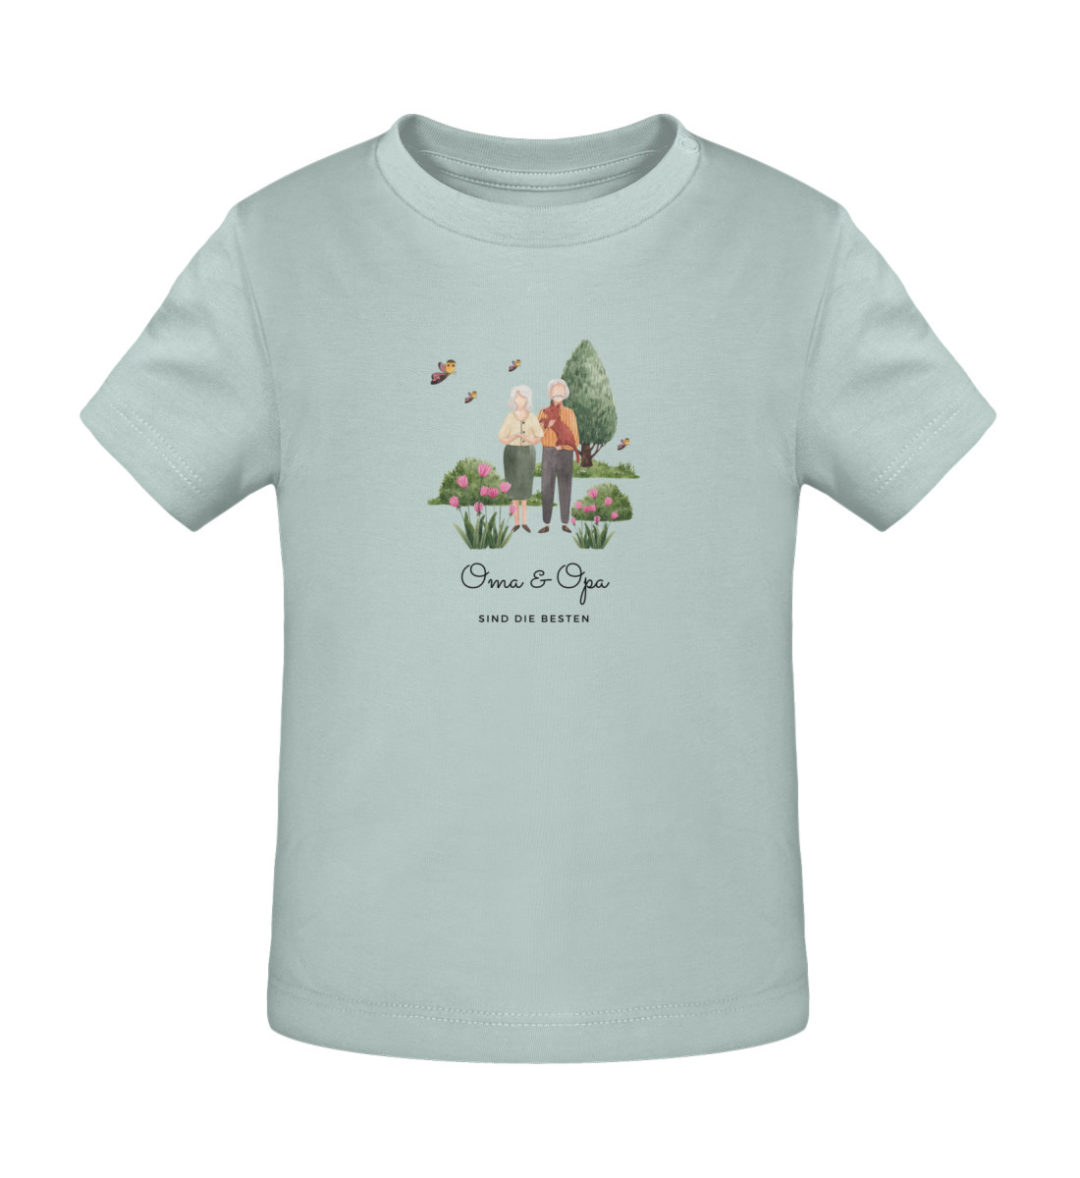 Oma & Opa sind die besten - Baby Creator T-Shirt ST/ST-7033